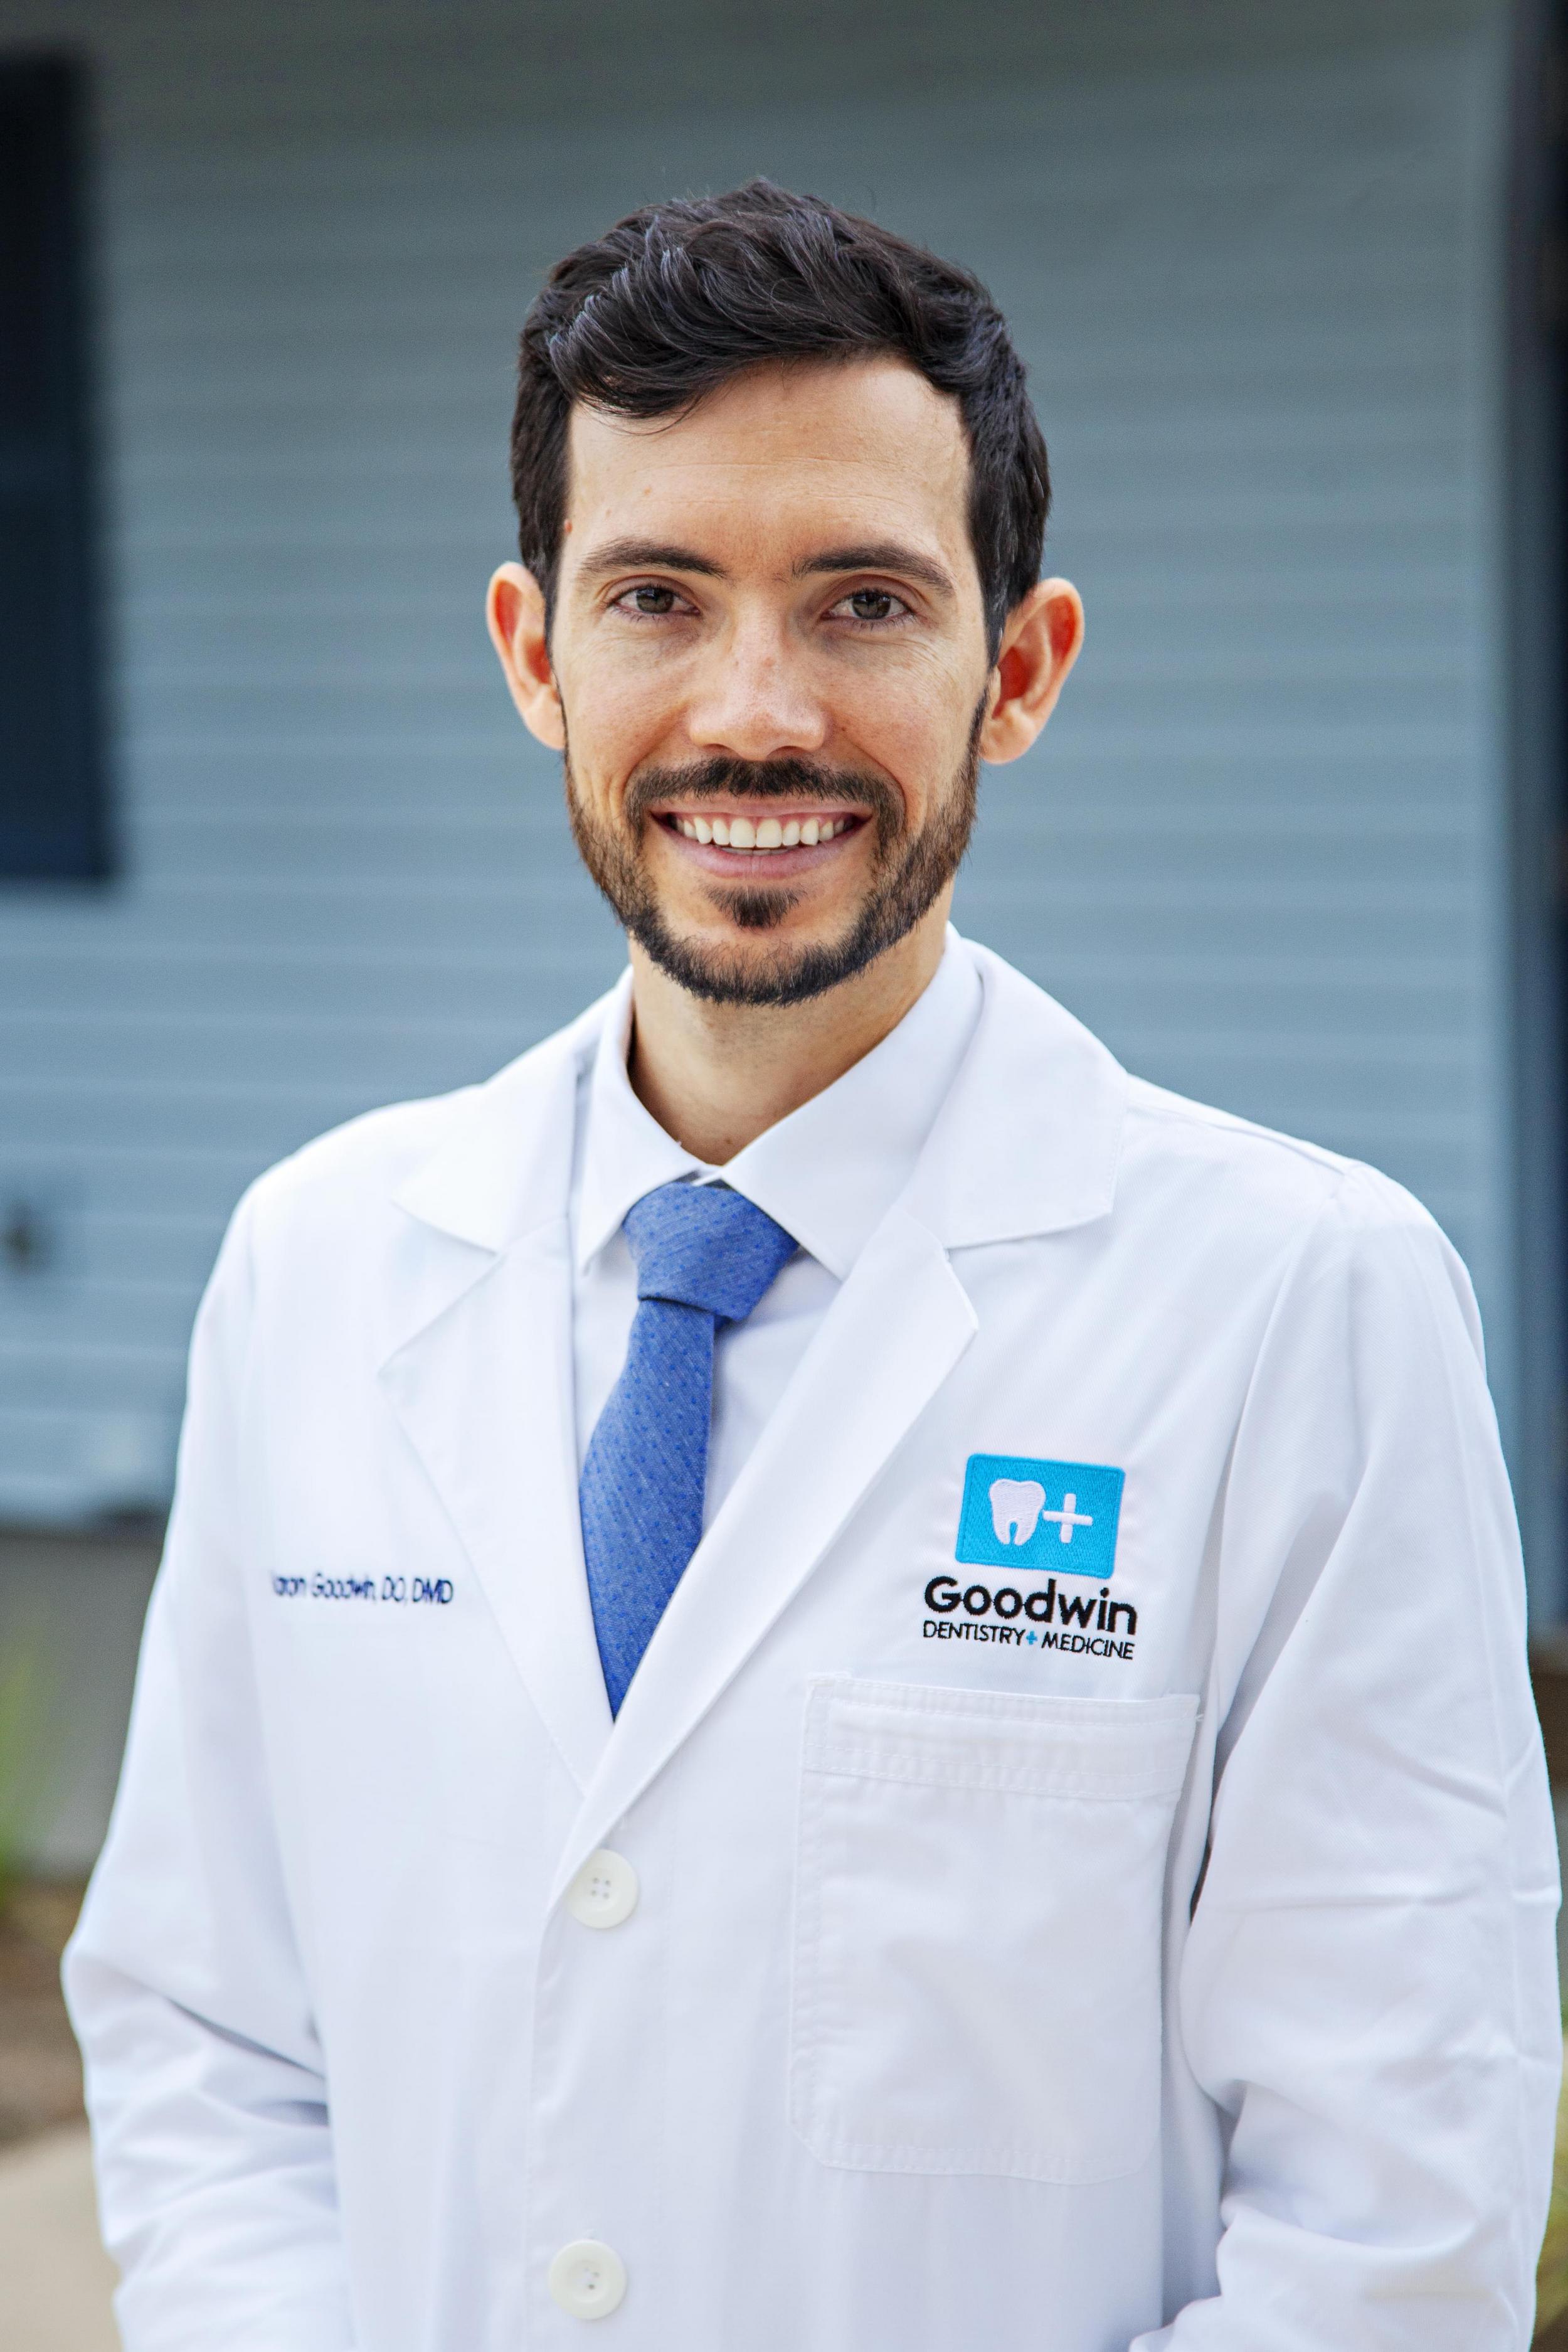 Dr. Aaron Goodwin